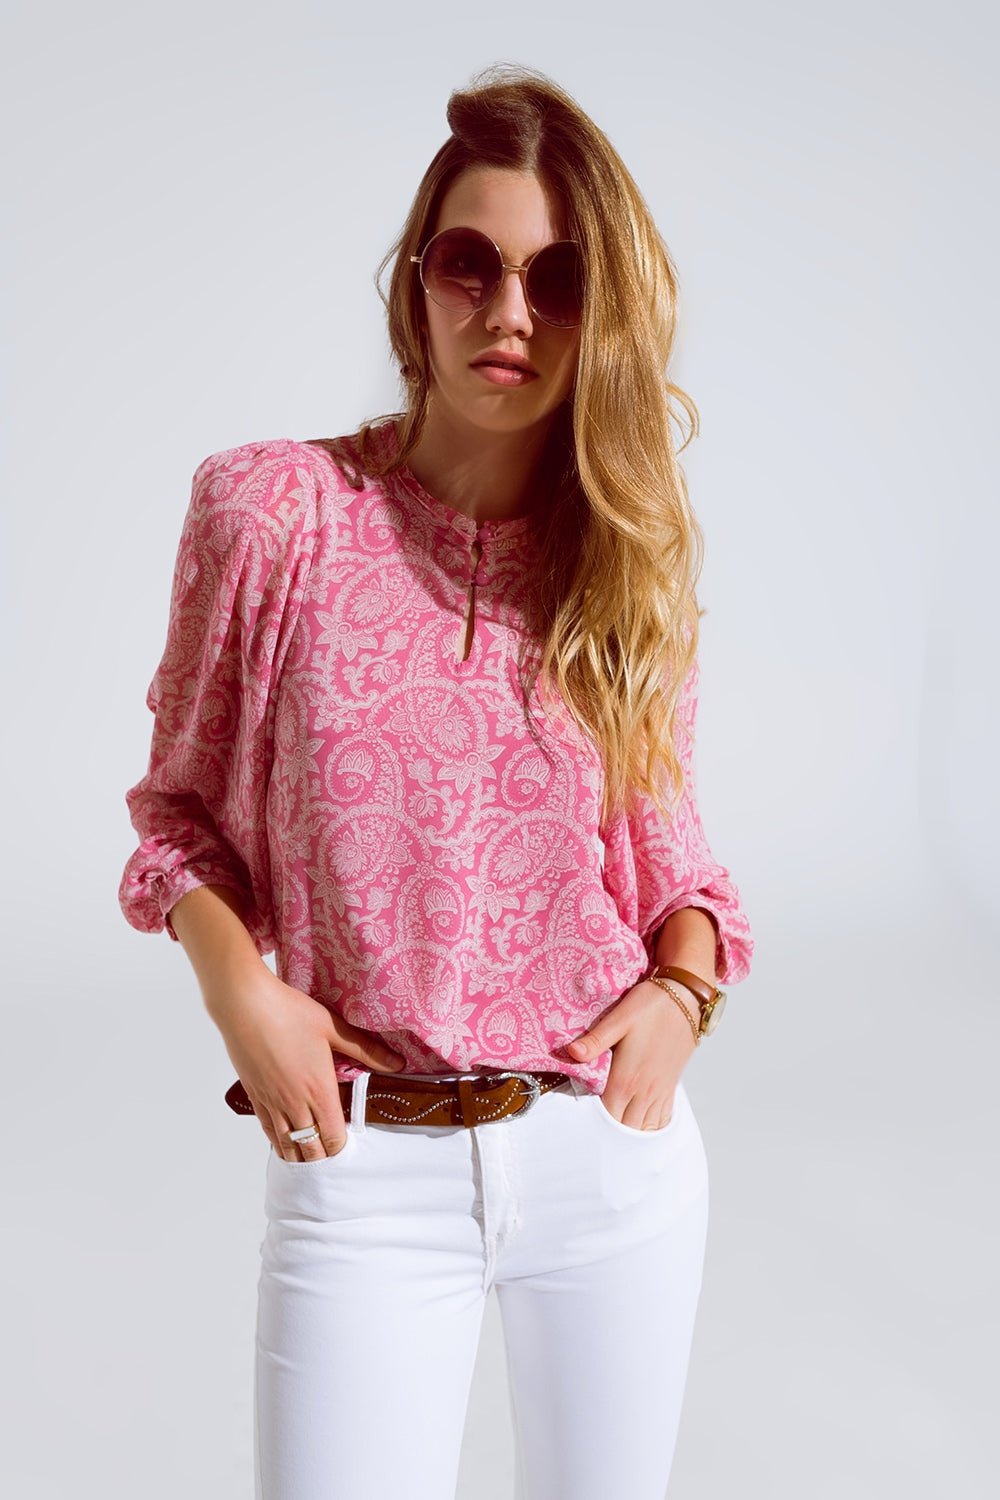 Roze chiffon blouse met bloemmotief en lange mouwen